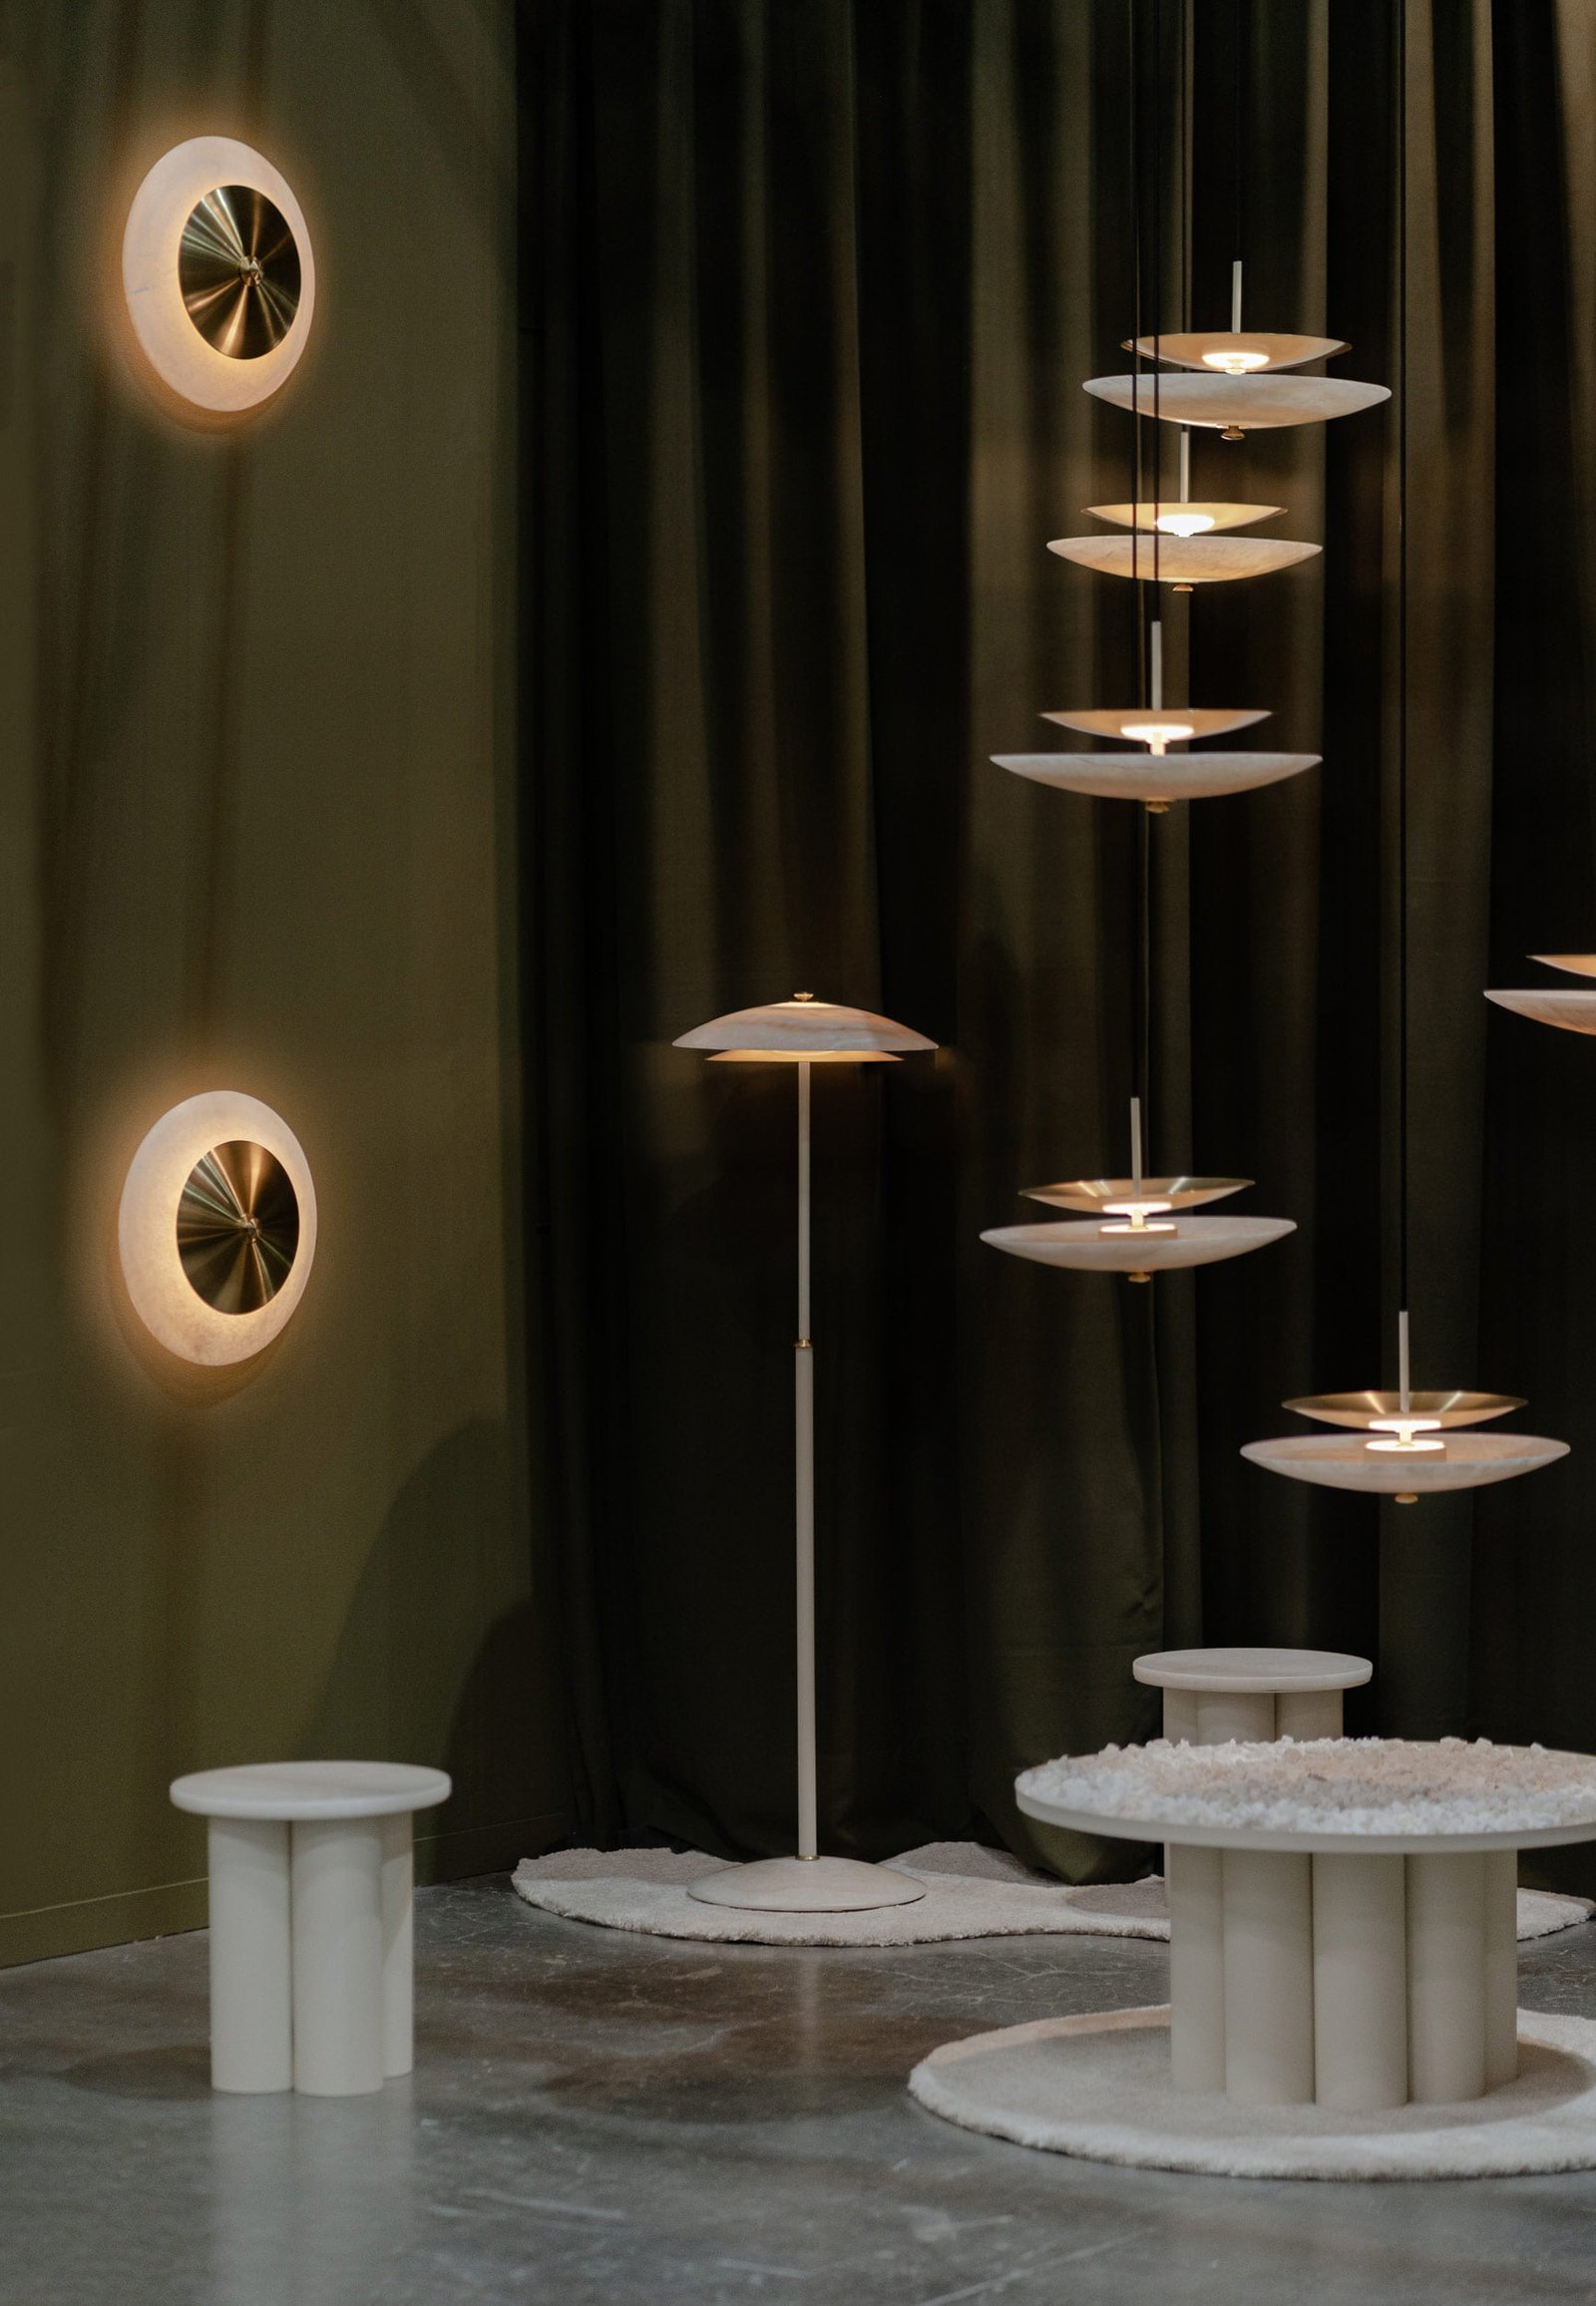 Colección de lámparas de piso, arbotantes y colgantes FASE hechas de ónix, latón y acero, diseñadas por Bandido Studio en galería de arte contemporaneo Zona MACO 2023.